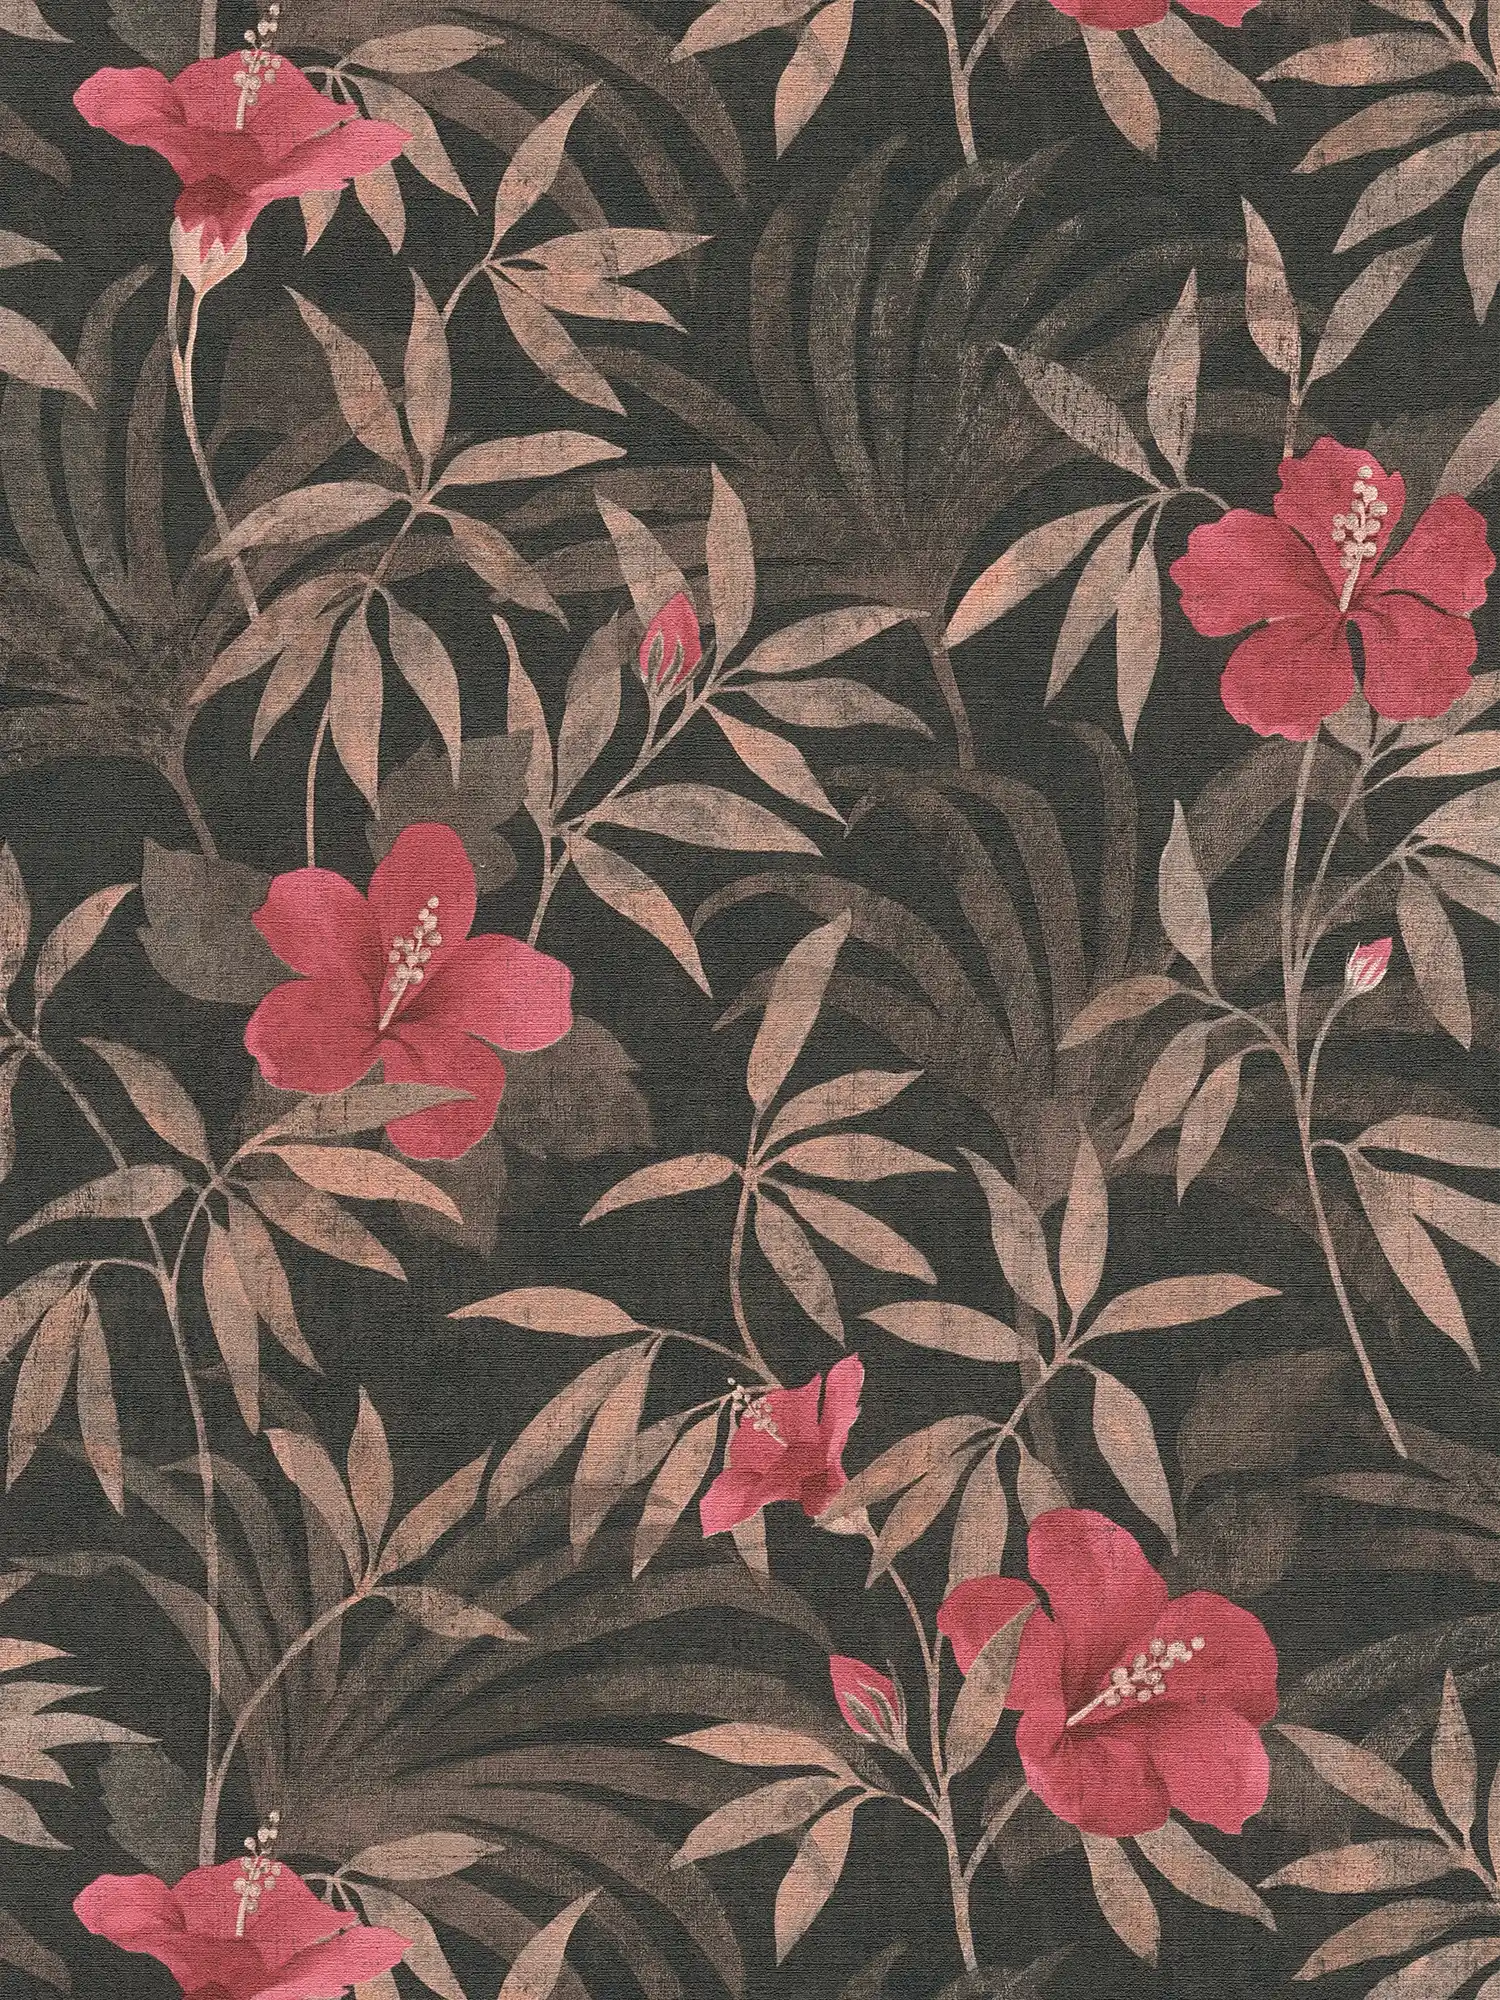 behang jungle bladeren & hibiscus bloemen - bruin, rood
